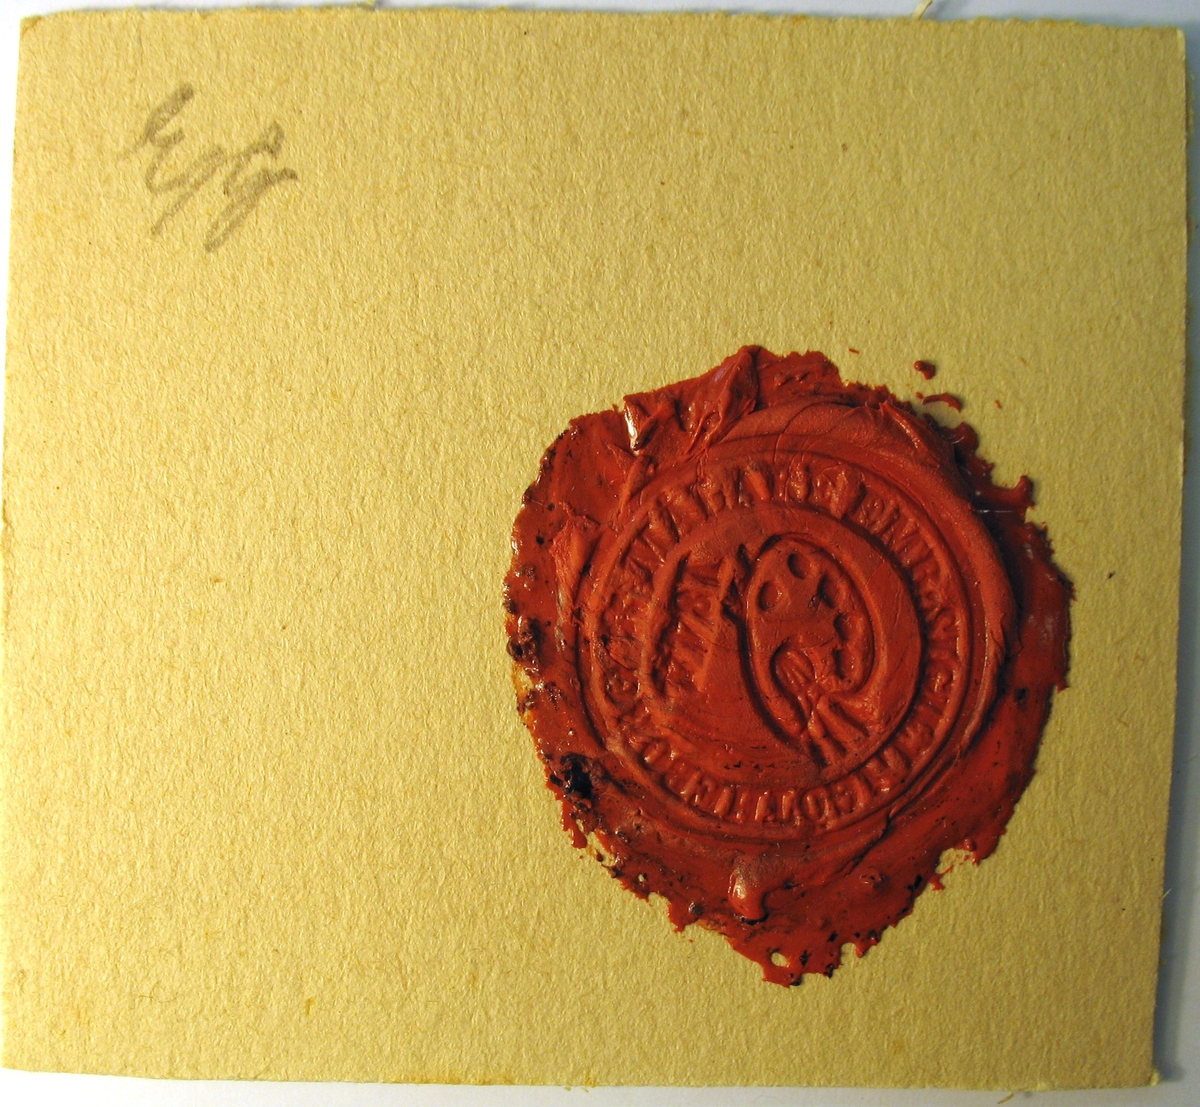 Sigill för skrået för målare.

Göteborg 1844, svartstämpel. "MÅLARE EMB. SIGILL I GÖTHEBORG". En palett, därunder årtalet 1844. Diameter 28. (Från stamp på Göteborgs museum 1586).